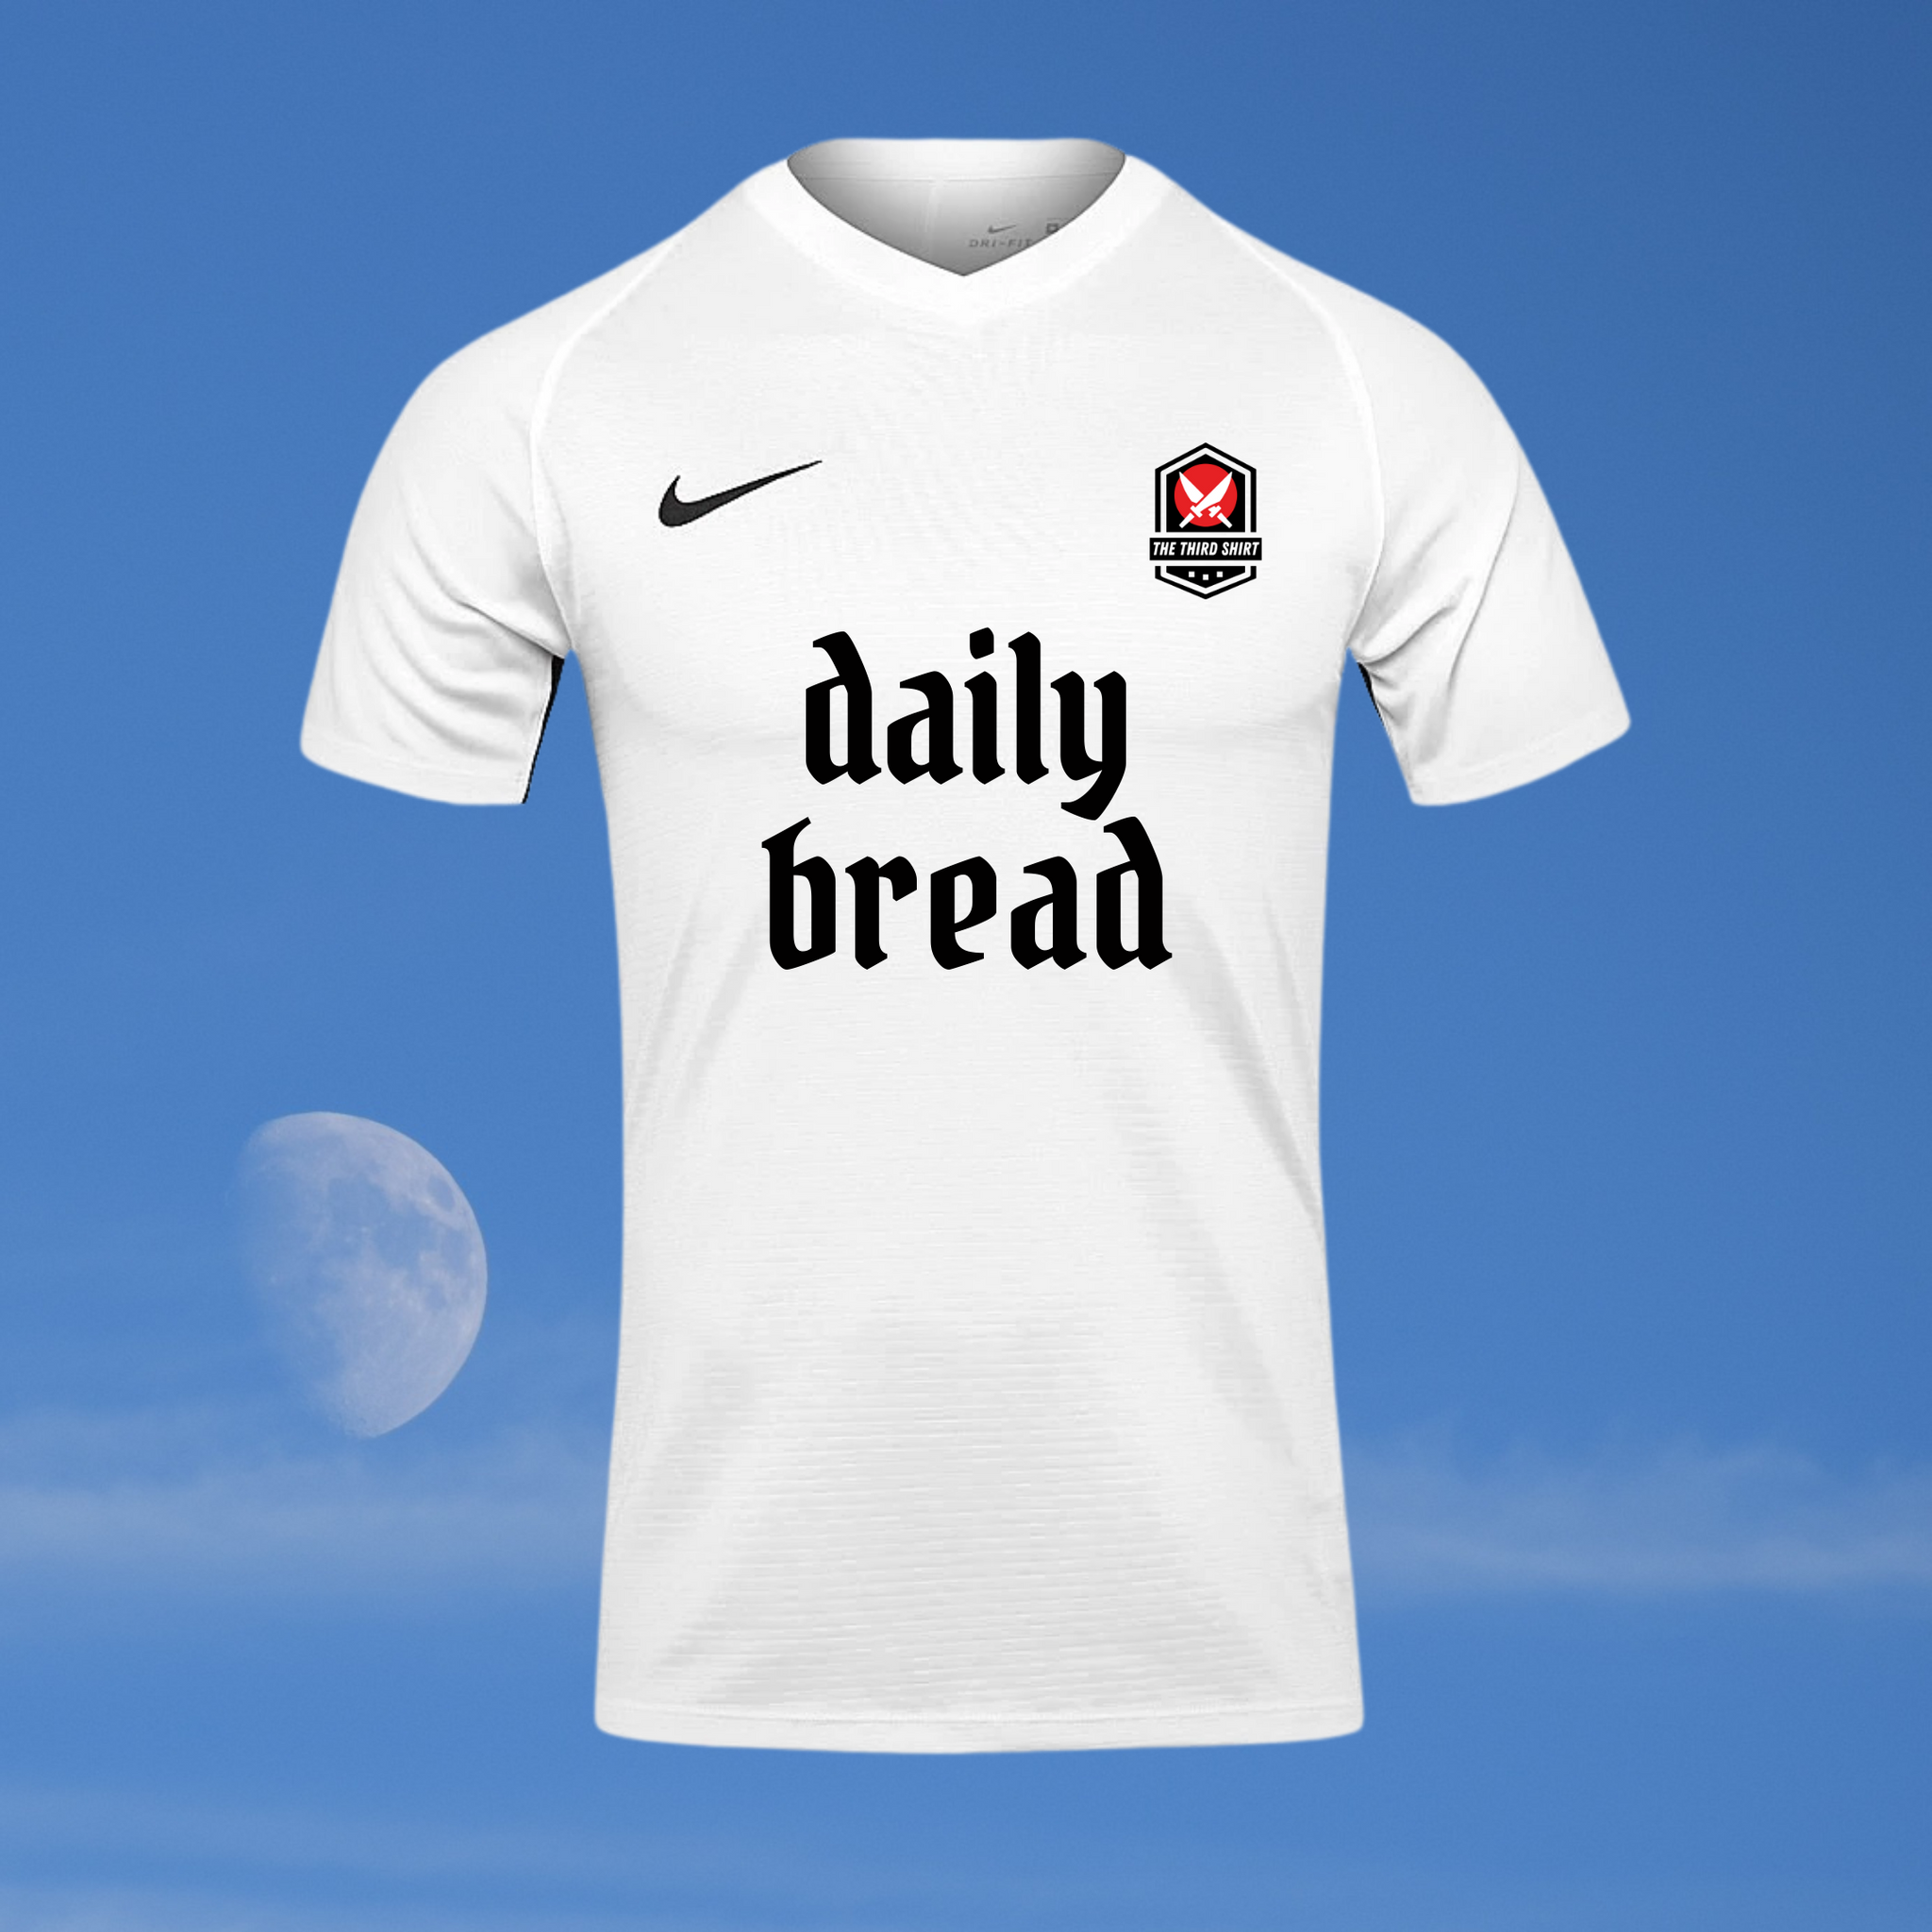 Daily Bread - White - Nike Tiempo Shirt